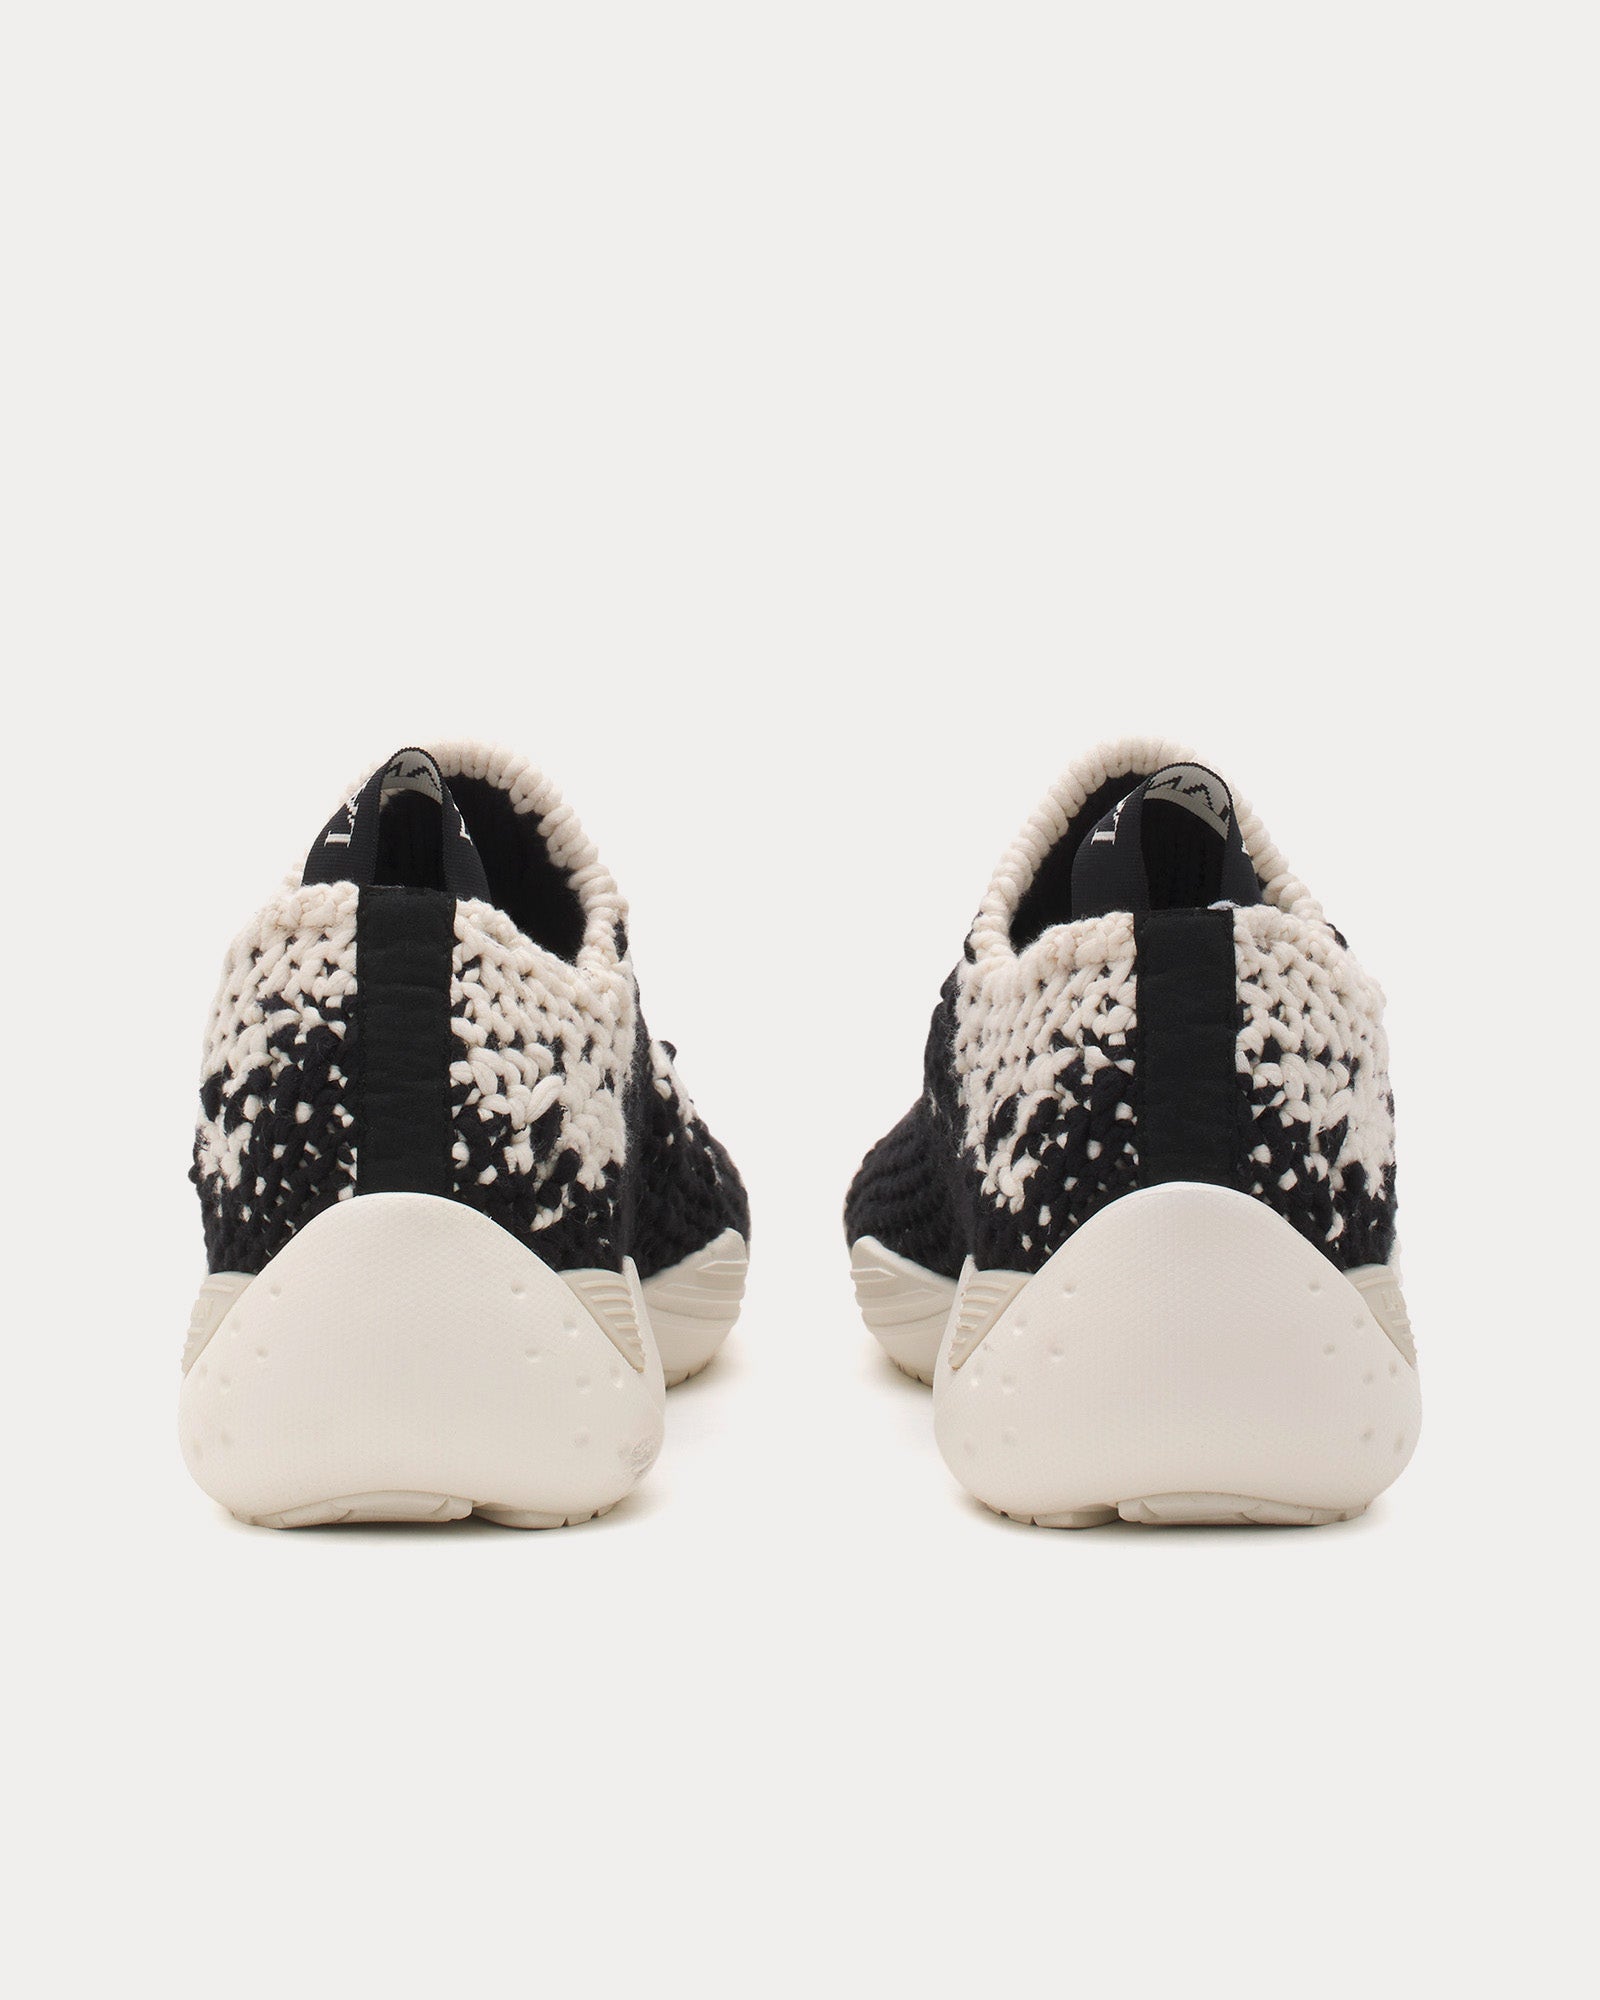 Lanvin - Flash-Knit Cotton Ecru / Black Low Top Sneakers